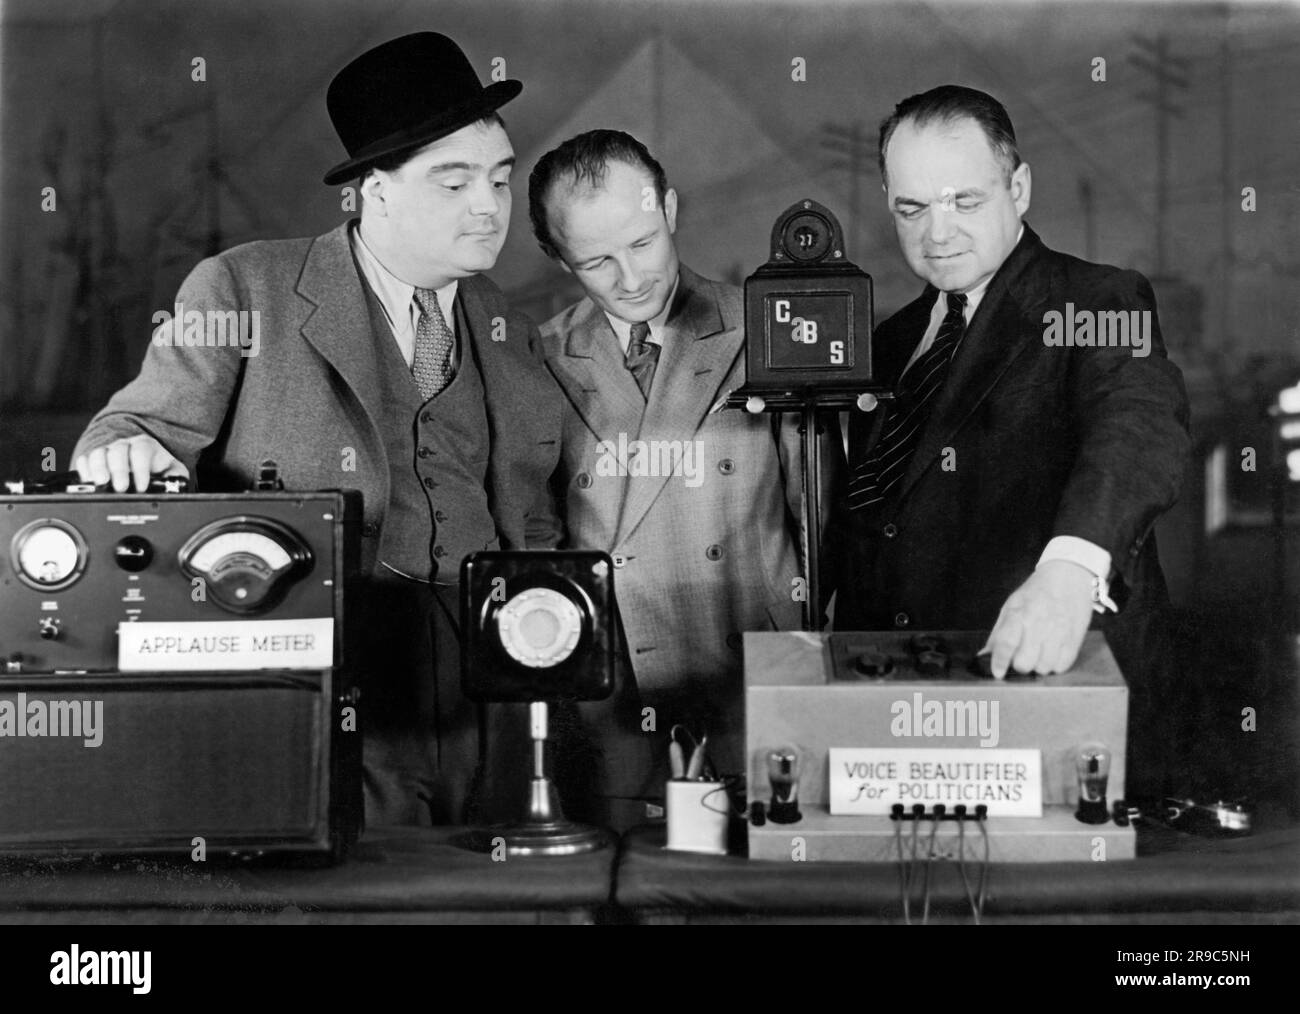 Stati Uniti: c. 1928 Un uomo spiega alcune caratteristiche di trasmissione della CBS, tra cui il "Voice Beautifier for Politics" e un "Applausi Meter". Foto Stock